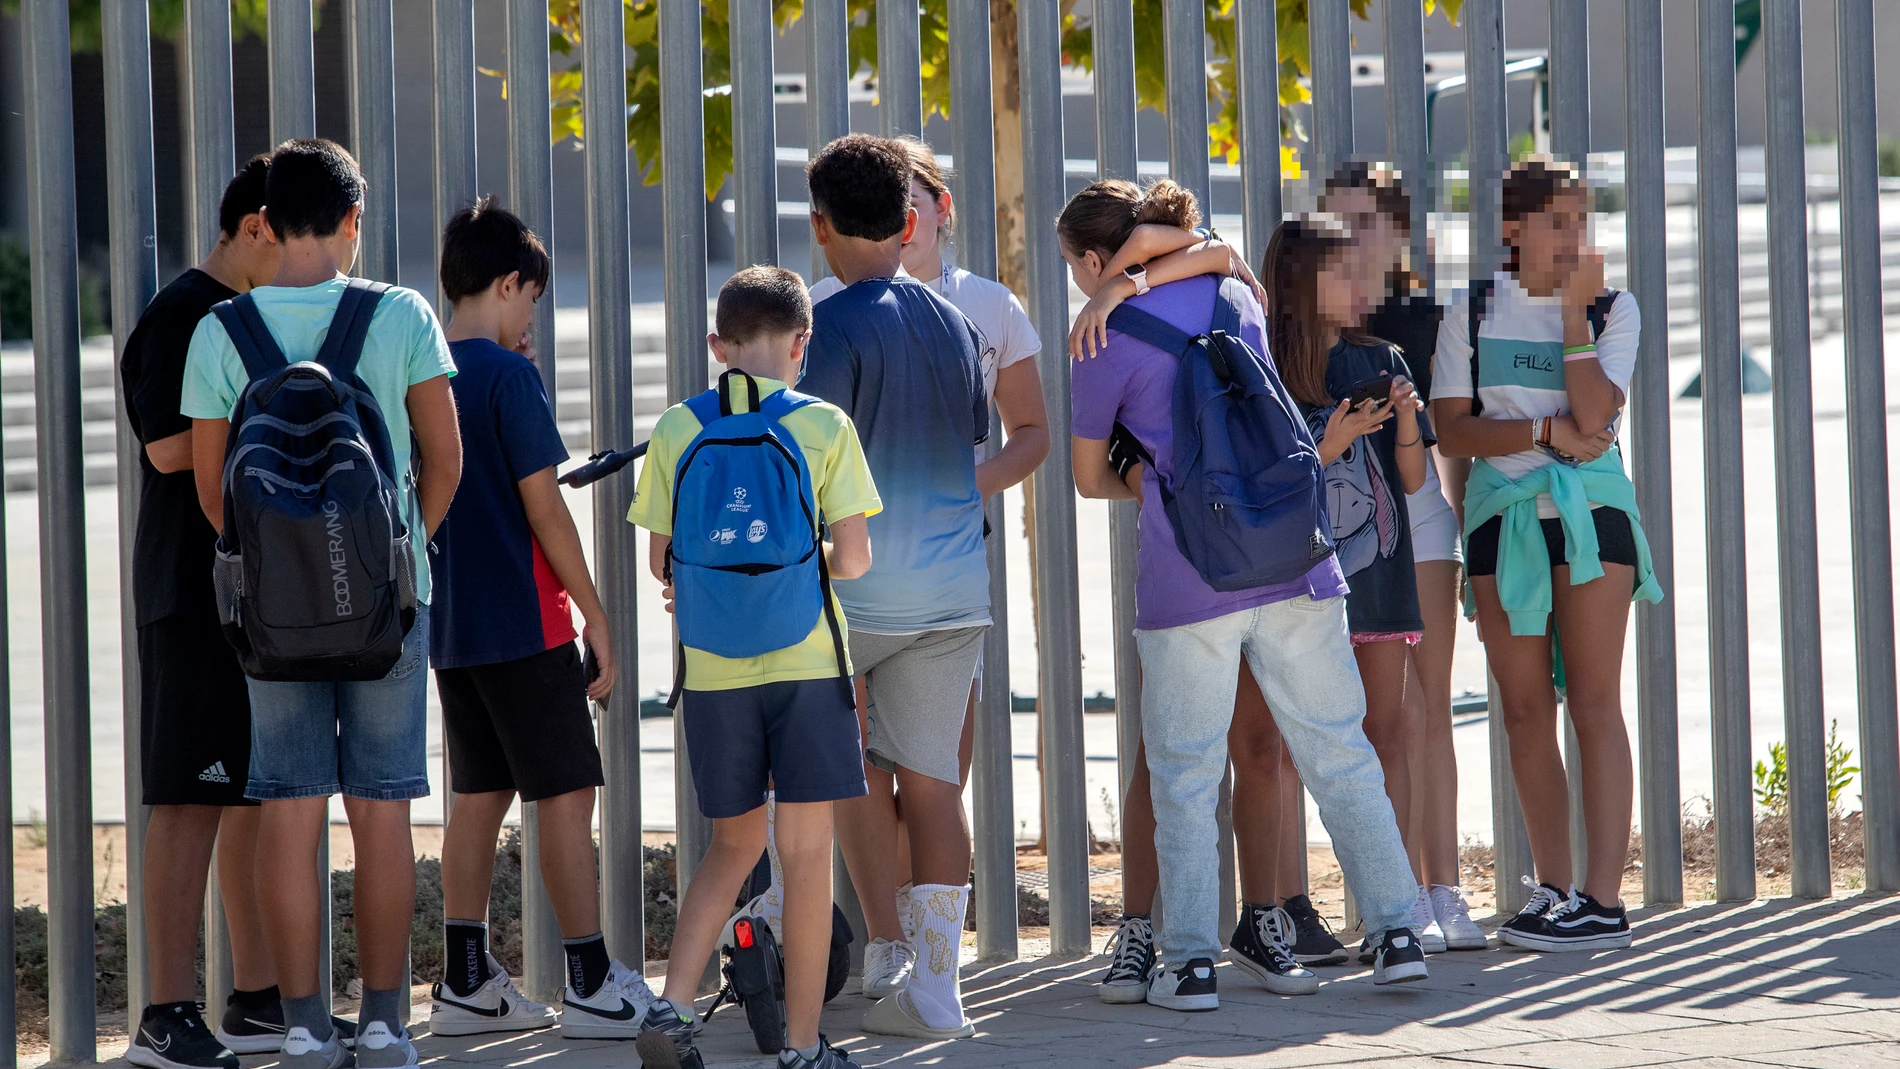 Los alumnos del instituto de Jerez regresan a clase tras las agresiones del jueves